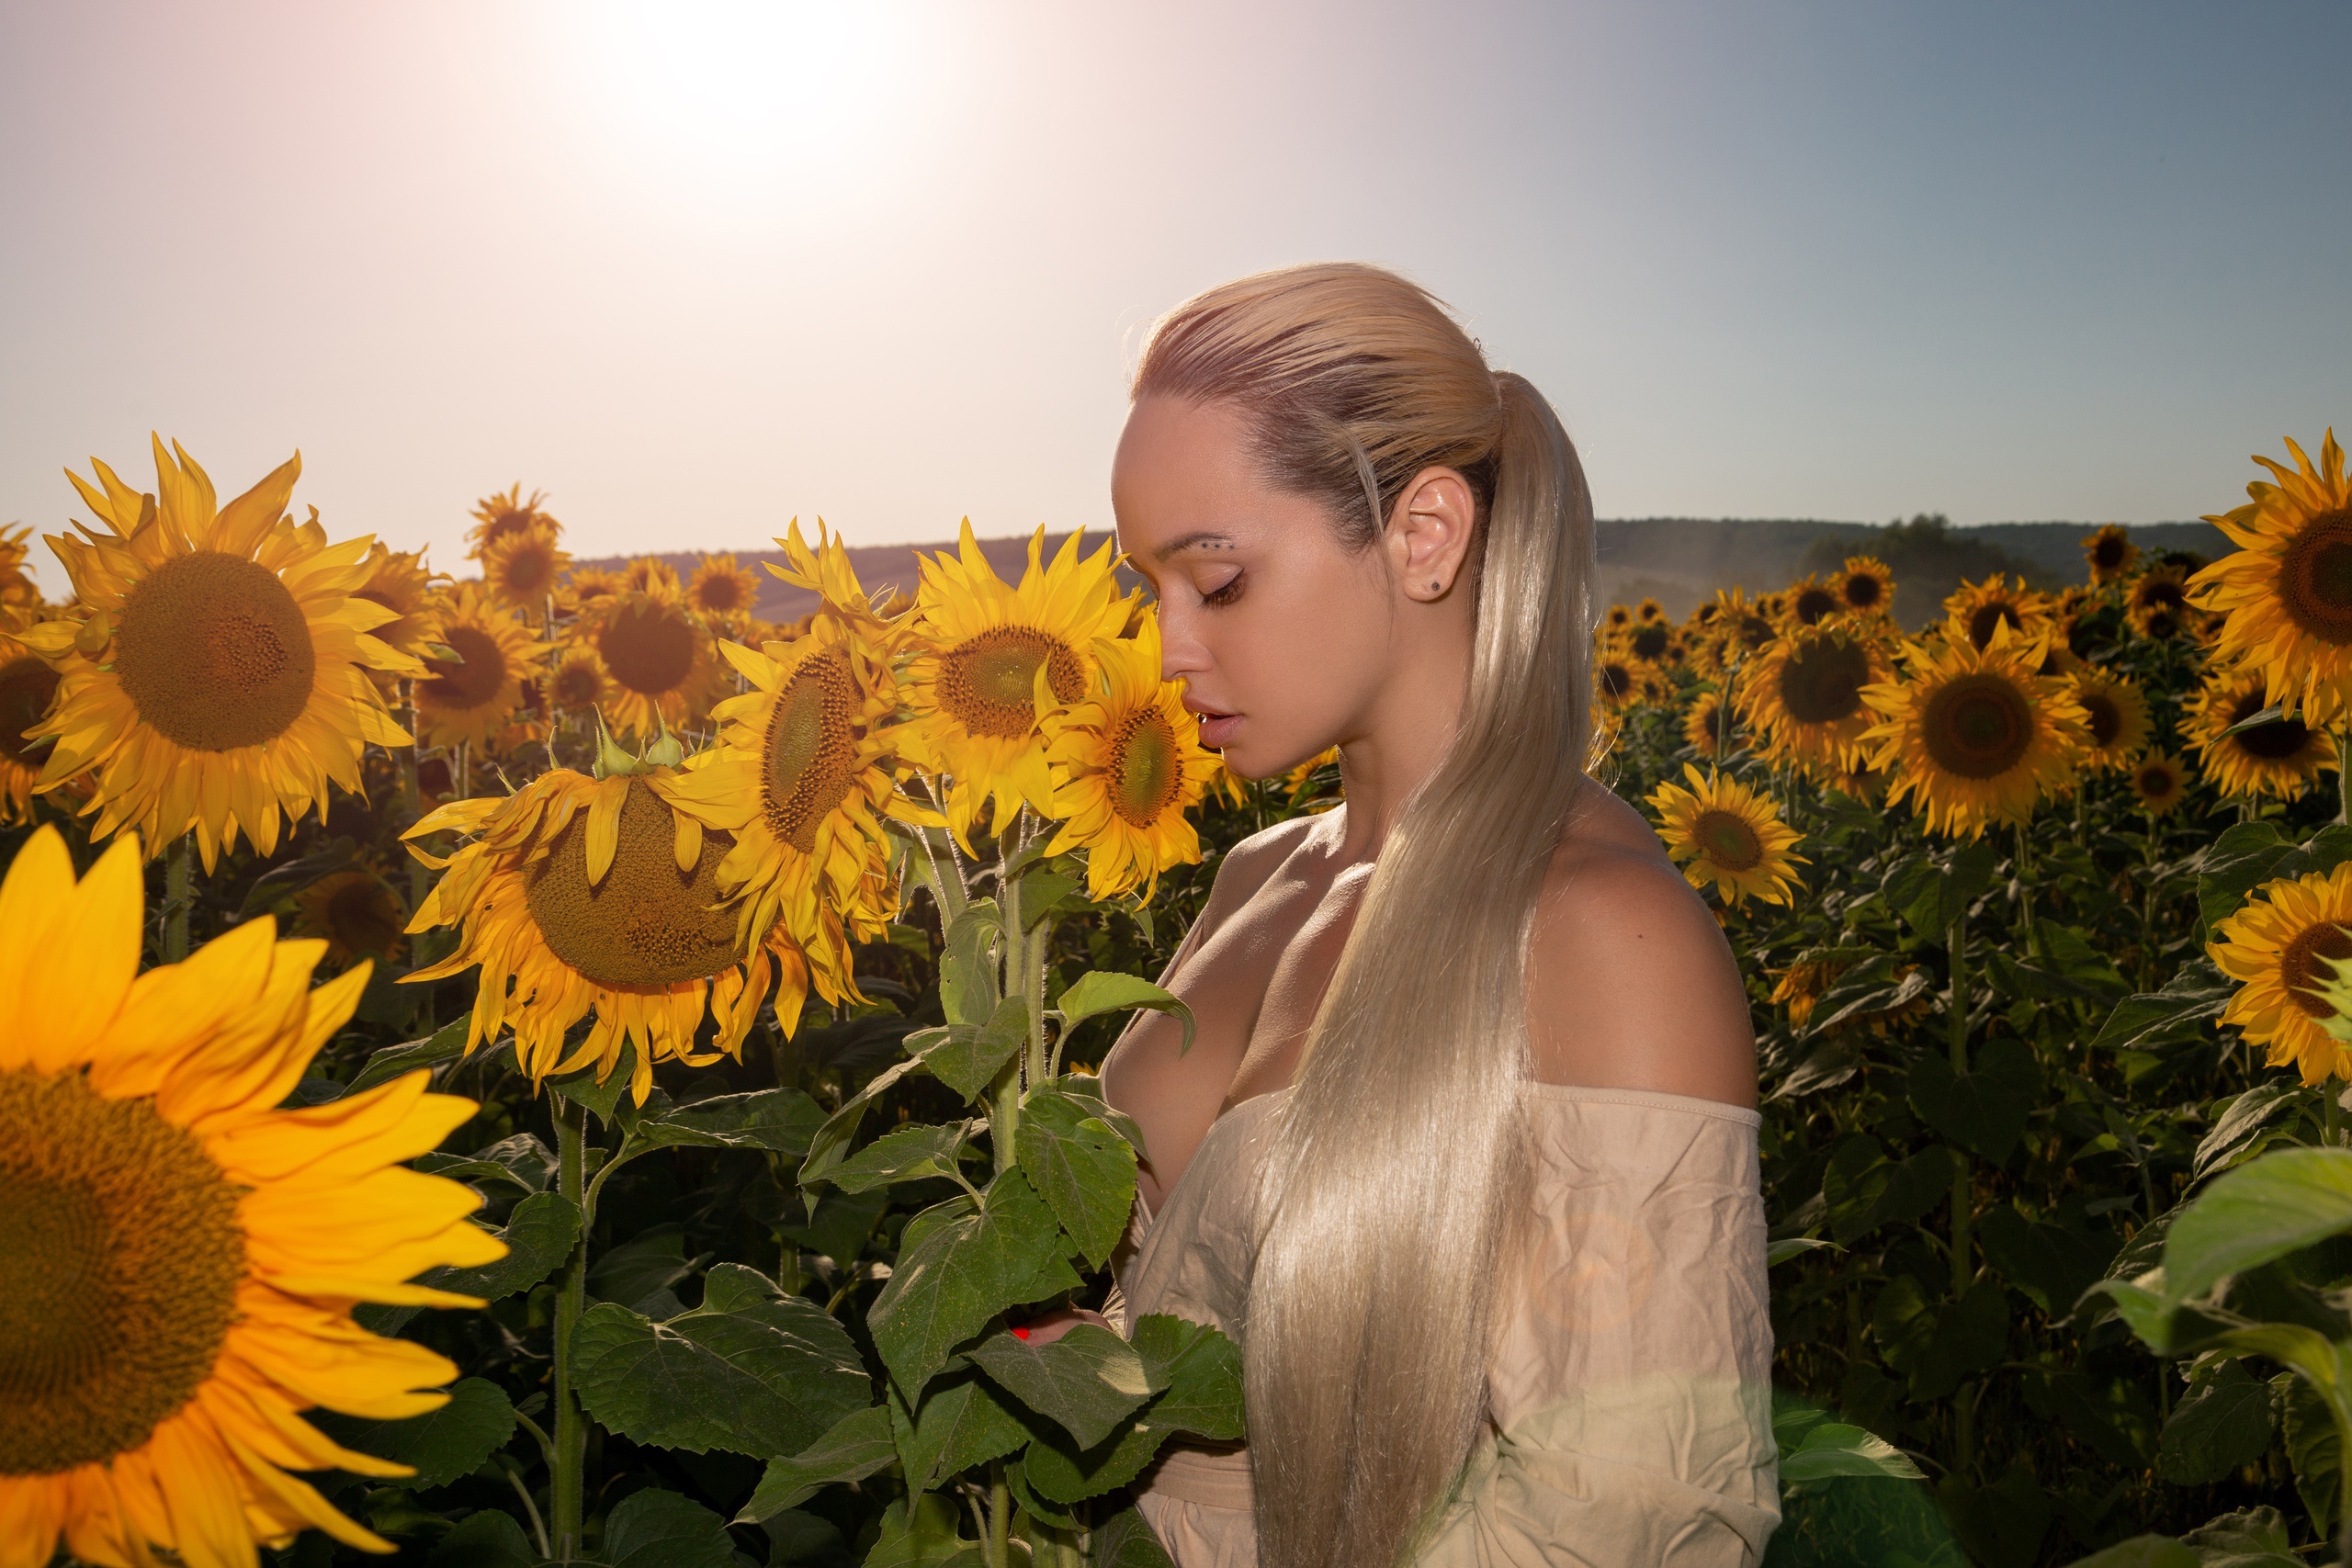 Молодая блондинка из деревни разделась в поле с подсолнухами